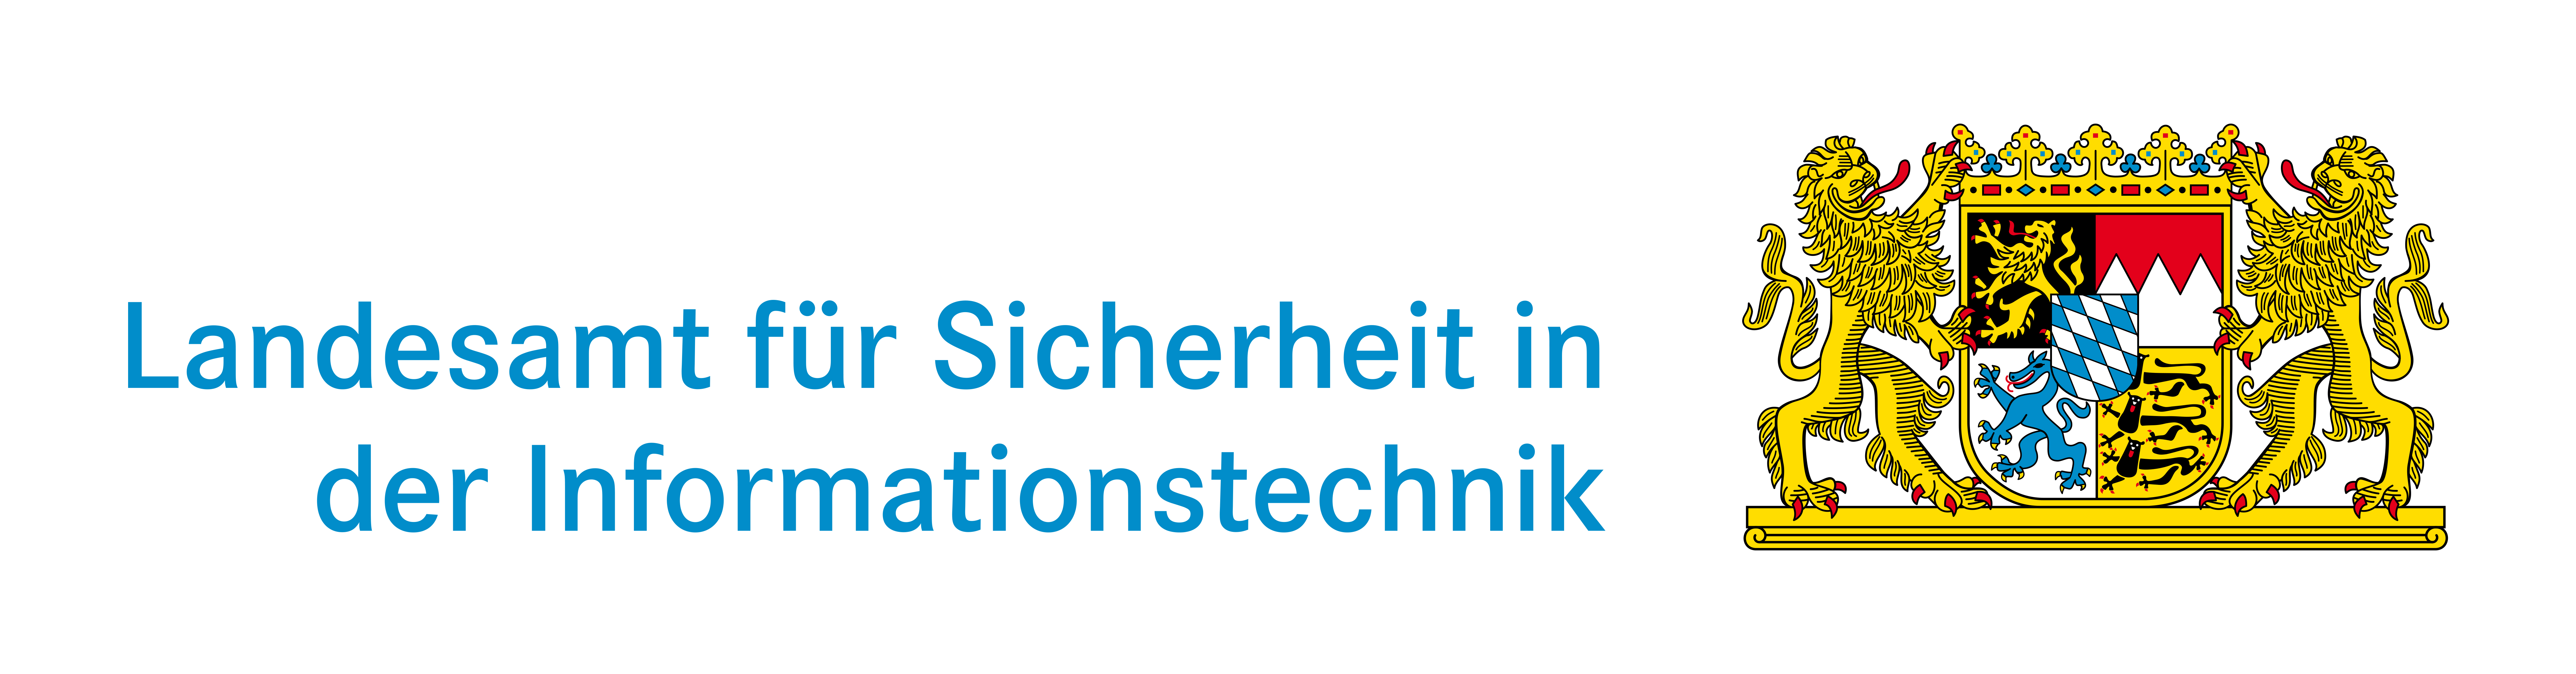 Landesamt für Sicherheit in der Informationstechnik Logo